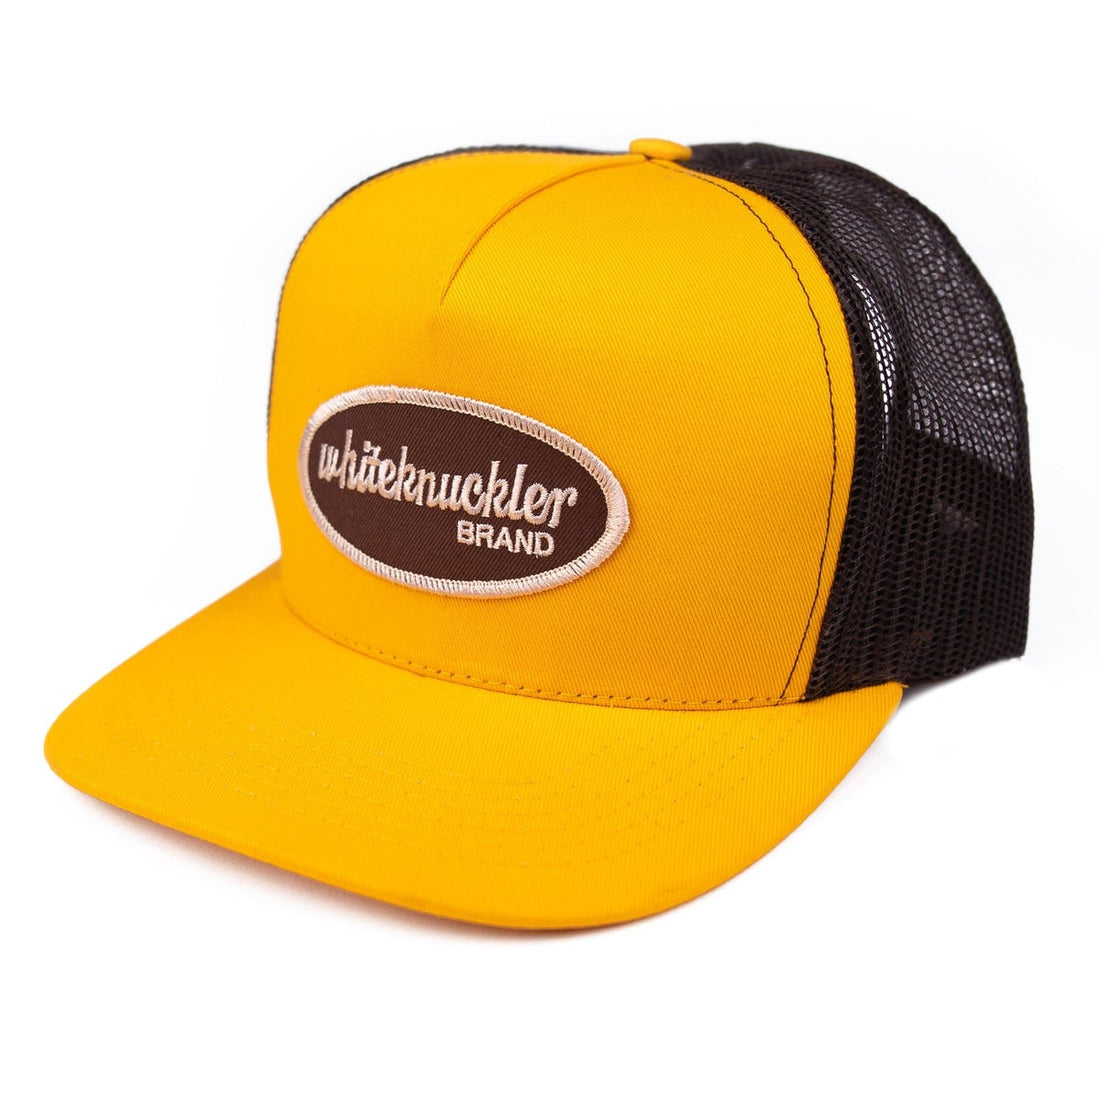 Made in the USA Spotlight: Trucker Hats